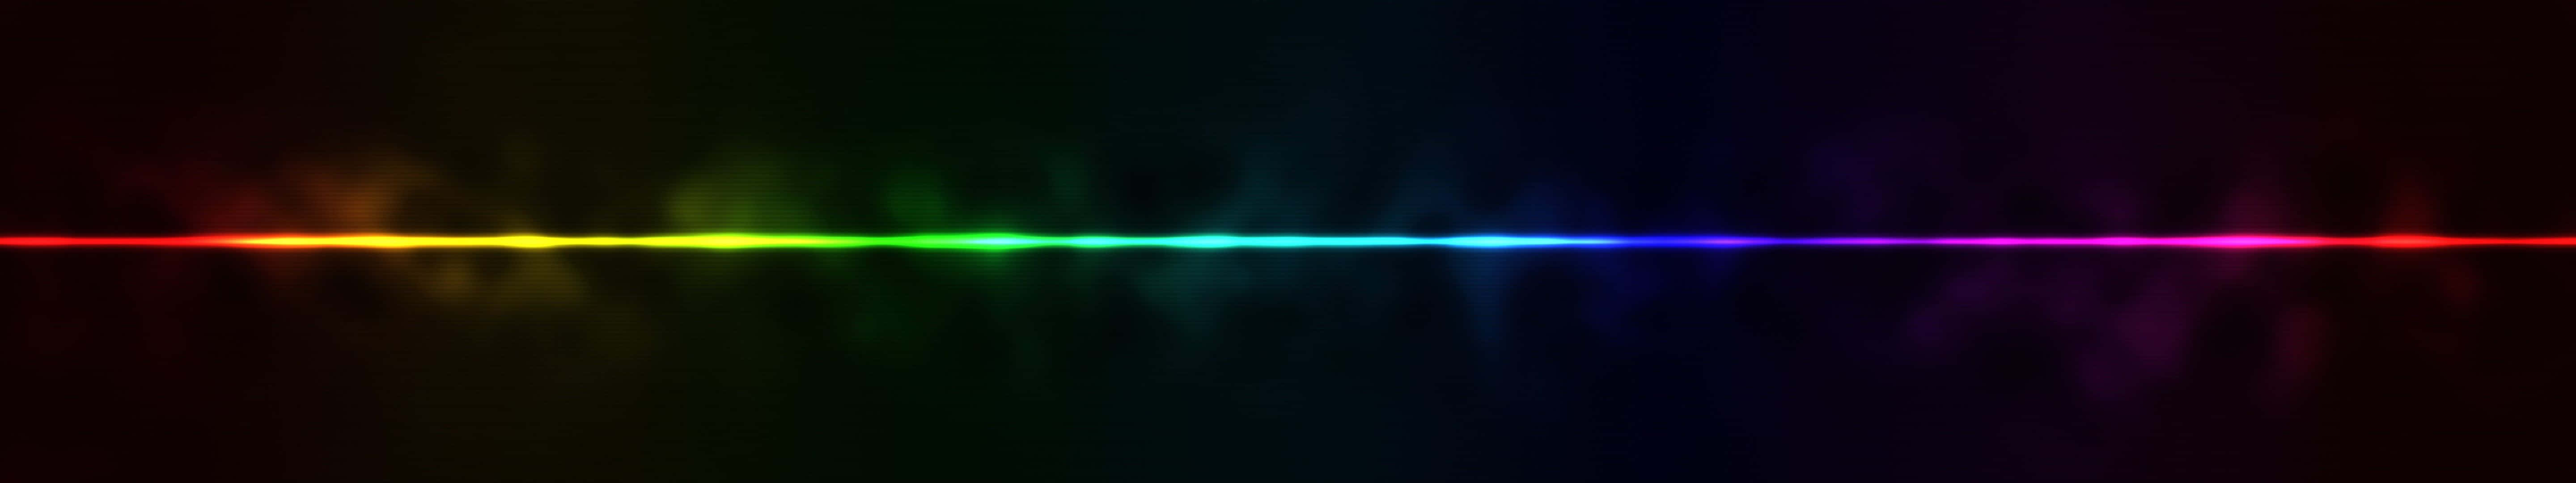 Efeitolinear De Luz Arco-íris Em Um Monitor Pixel 3 Como Plano De Fundo.